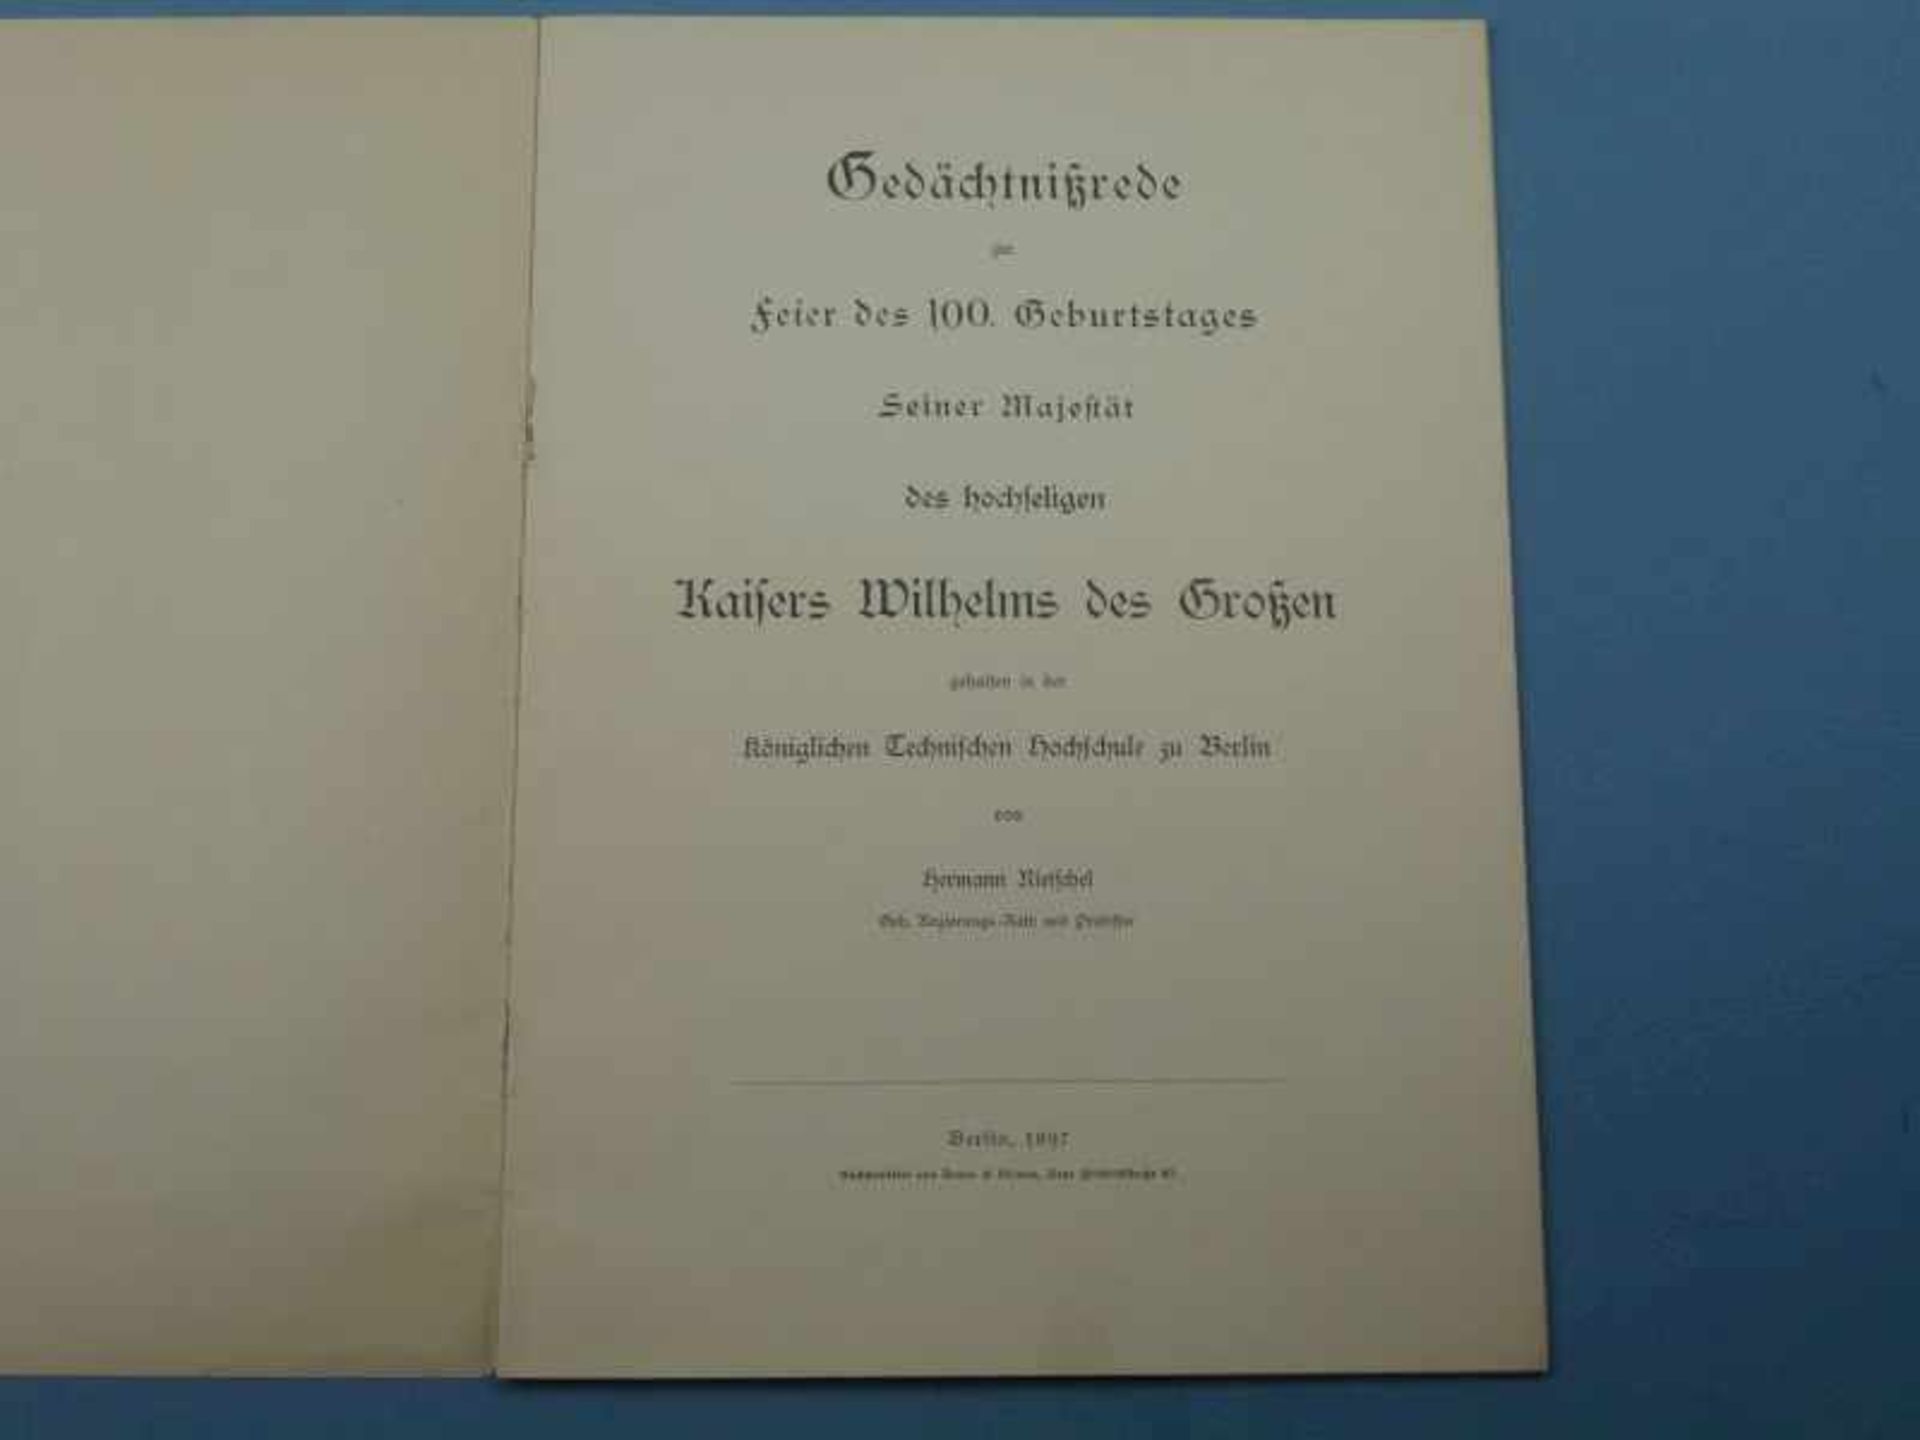 Gedächtnisrede zum 100. Geburtstag Kaiser Wilhelms des Großen Hermann Rietschel, Berlin1897, 18 - Bild 2 aus 2